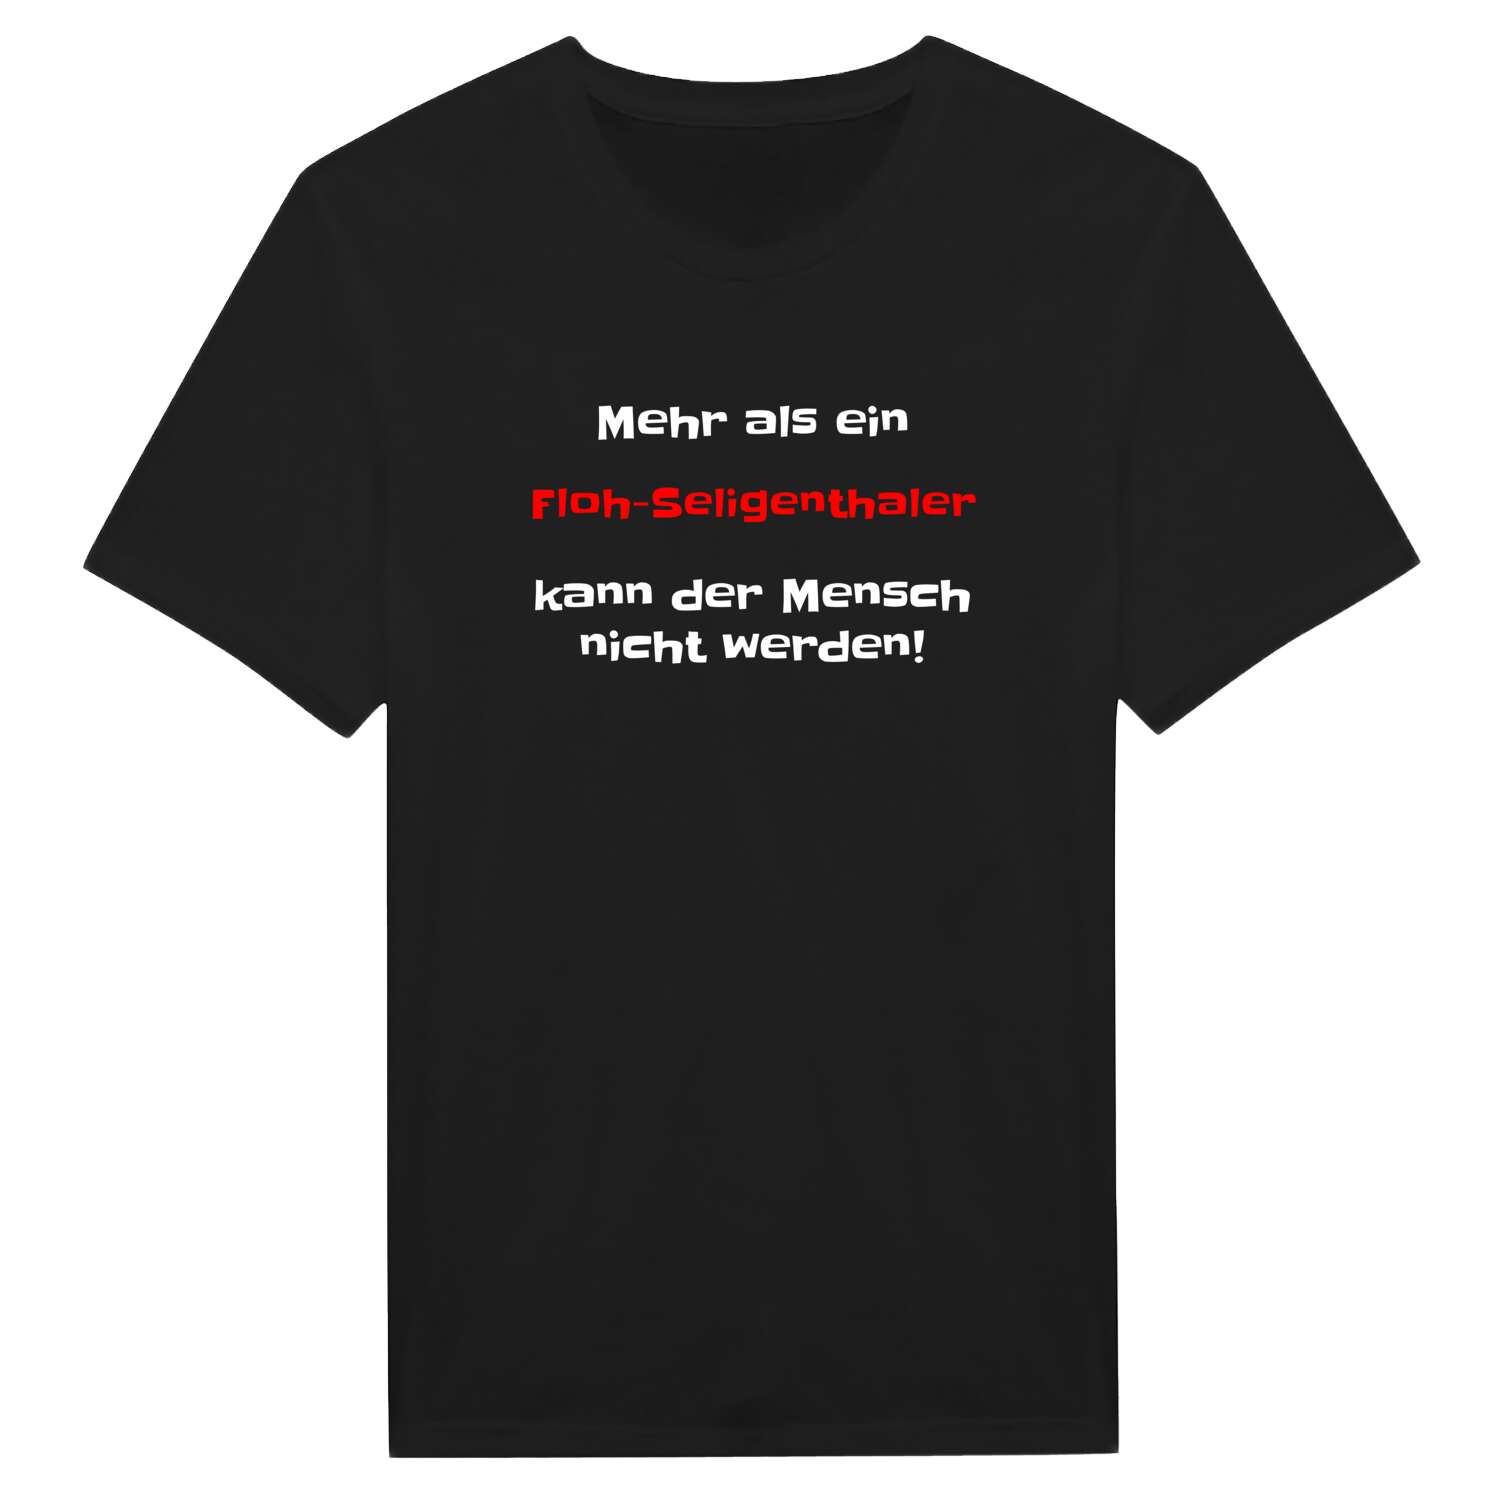 Floh-Seligenthal T-Shirt »Mehr als ein«